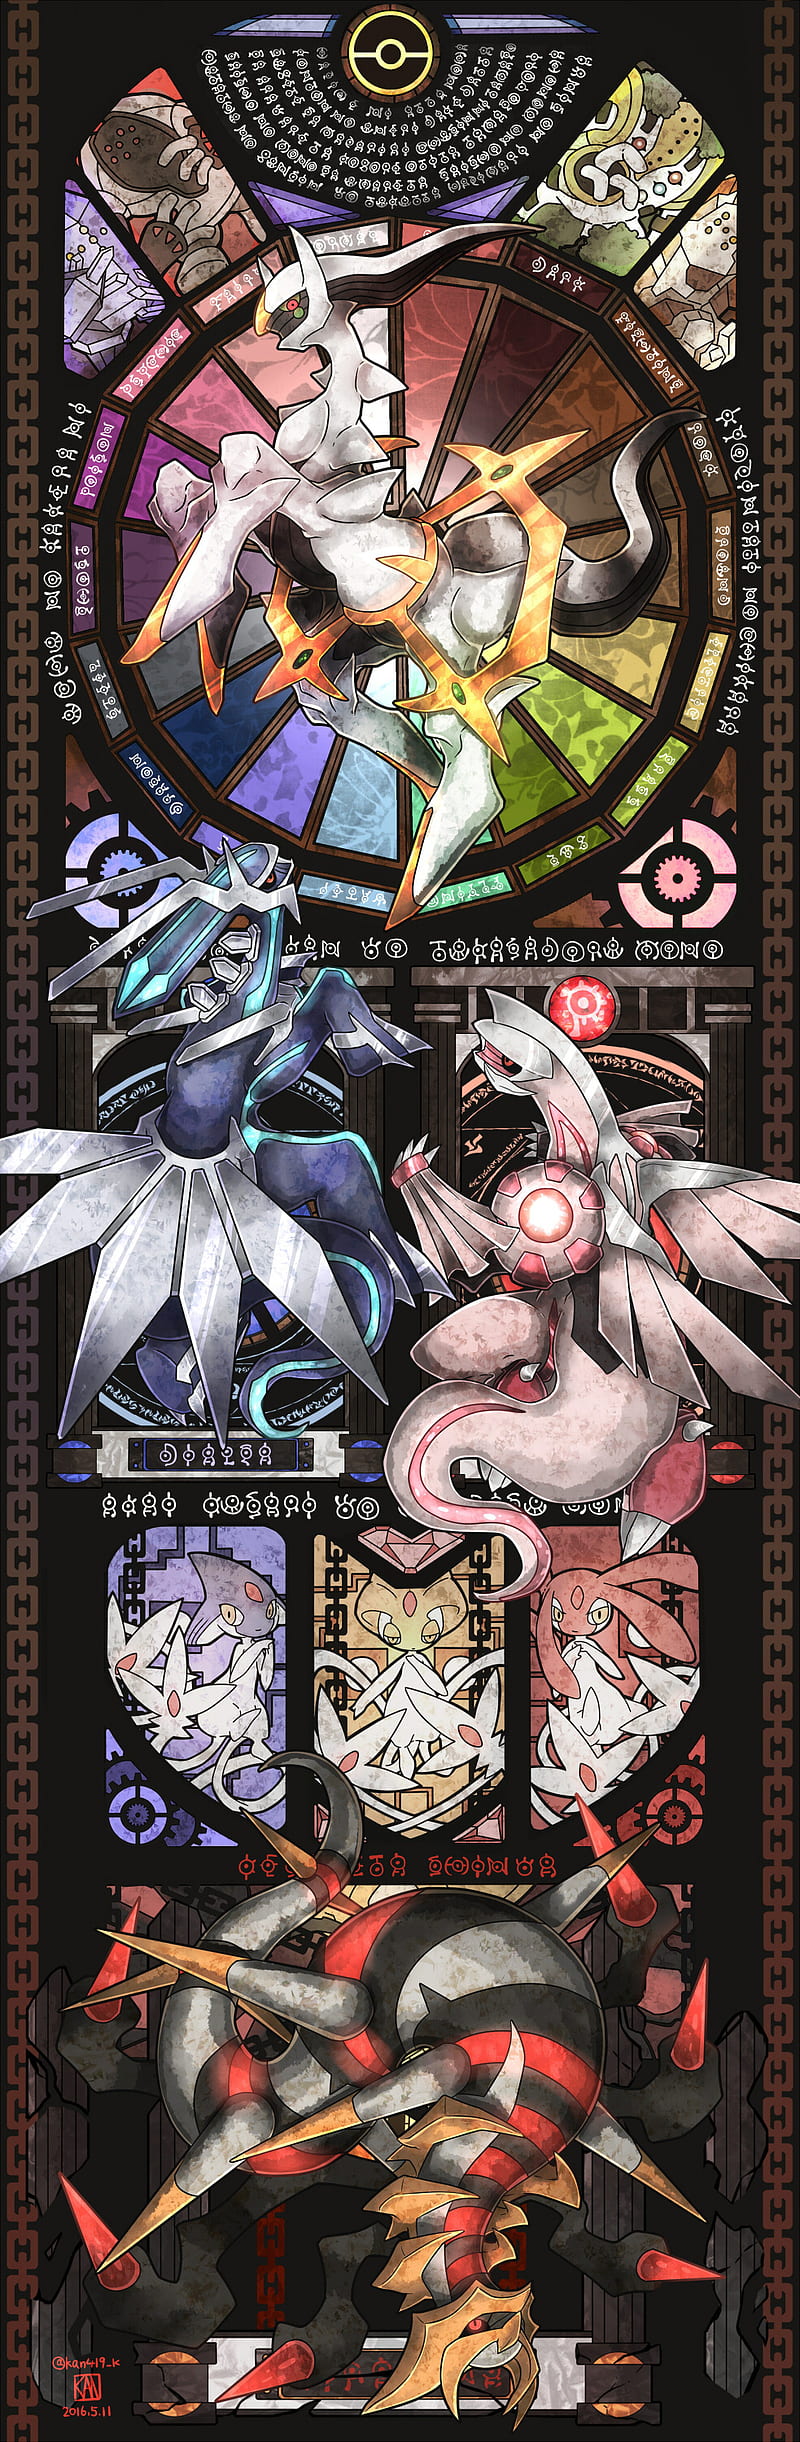 Mobile wallpaper: Anime, Pokémon, Giratina (Pokémon), Dialga